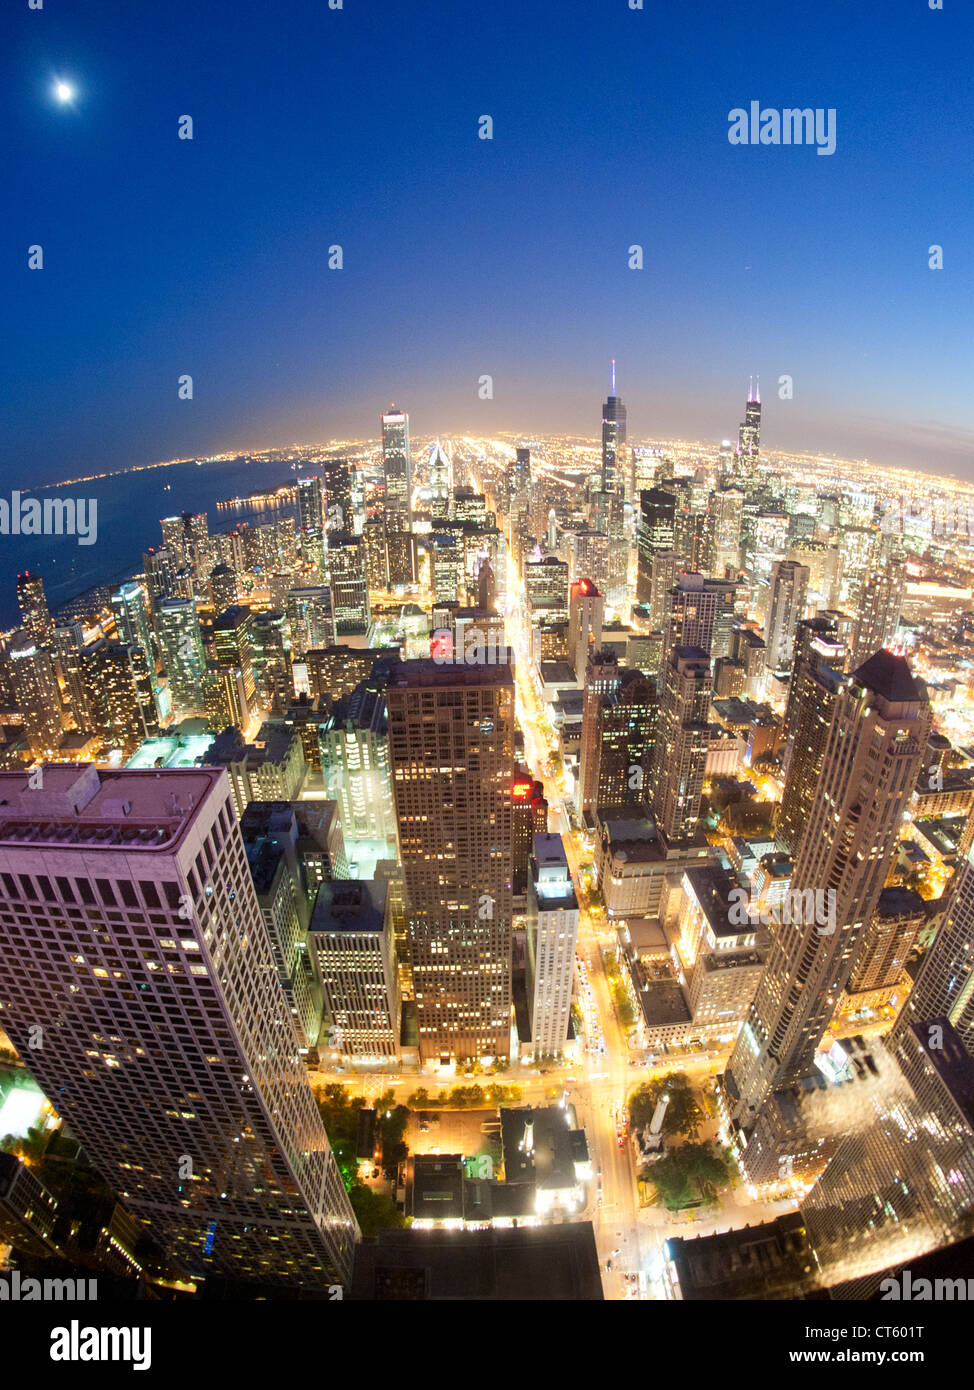 Vue de nuit au-dessus de Chicago à partir de la plate-forme d'observation des 100 étages John Hancock Tower à Chicago, Illinois, USA. Banque D'Images